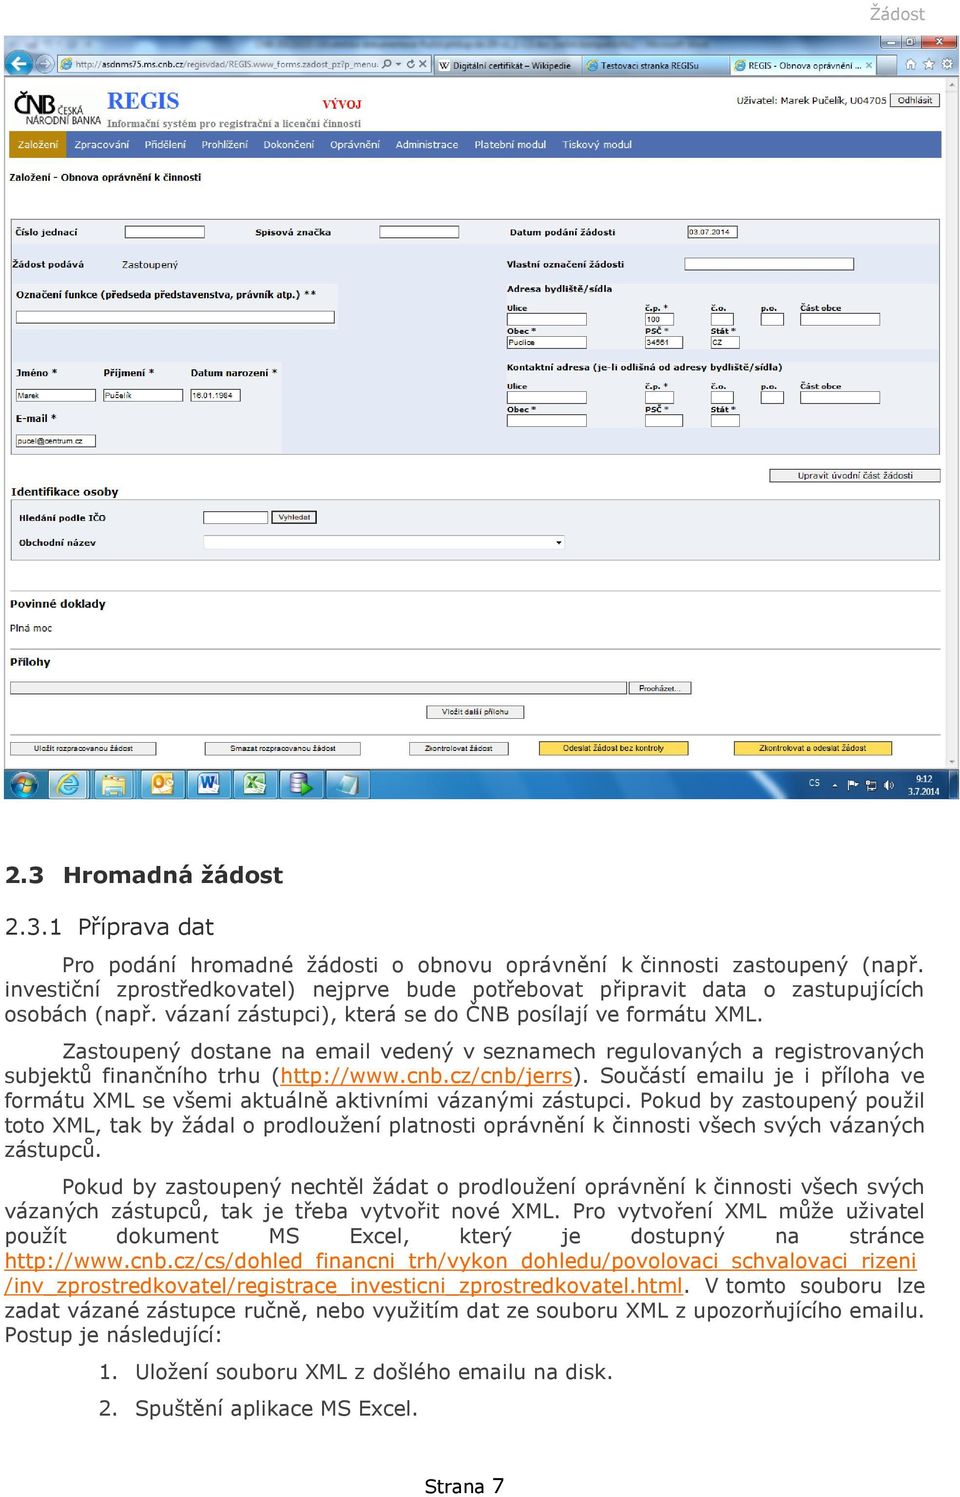 Zastoupený dostane na email vedený v seznamech regulovaných a registrovaných subjektů finančního trhu (http://www.cnb.cz/cnb/jerrs).